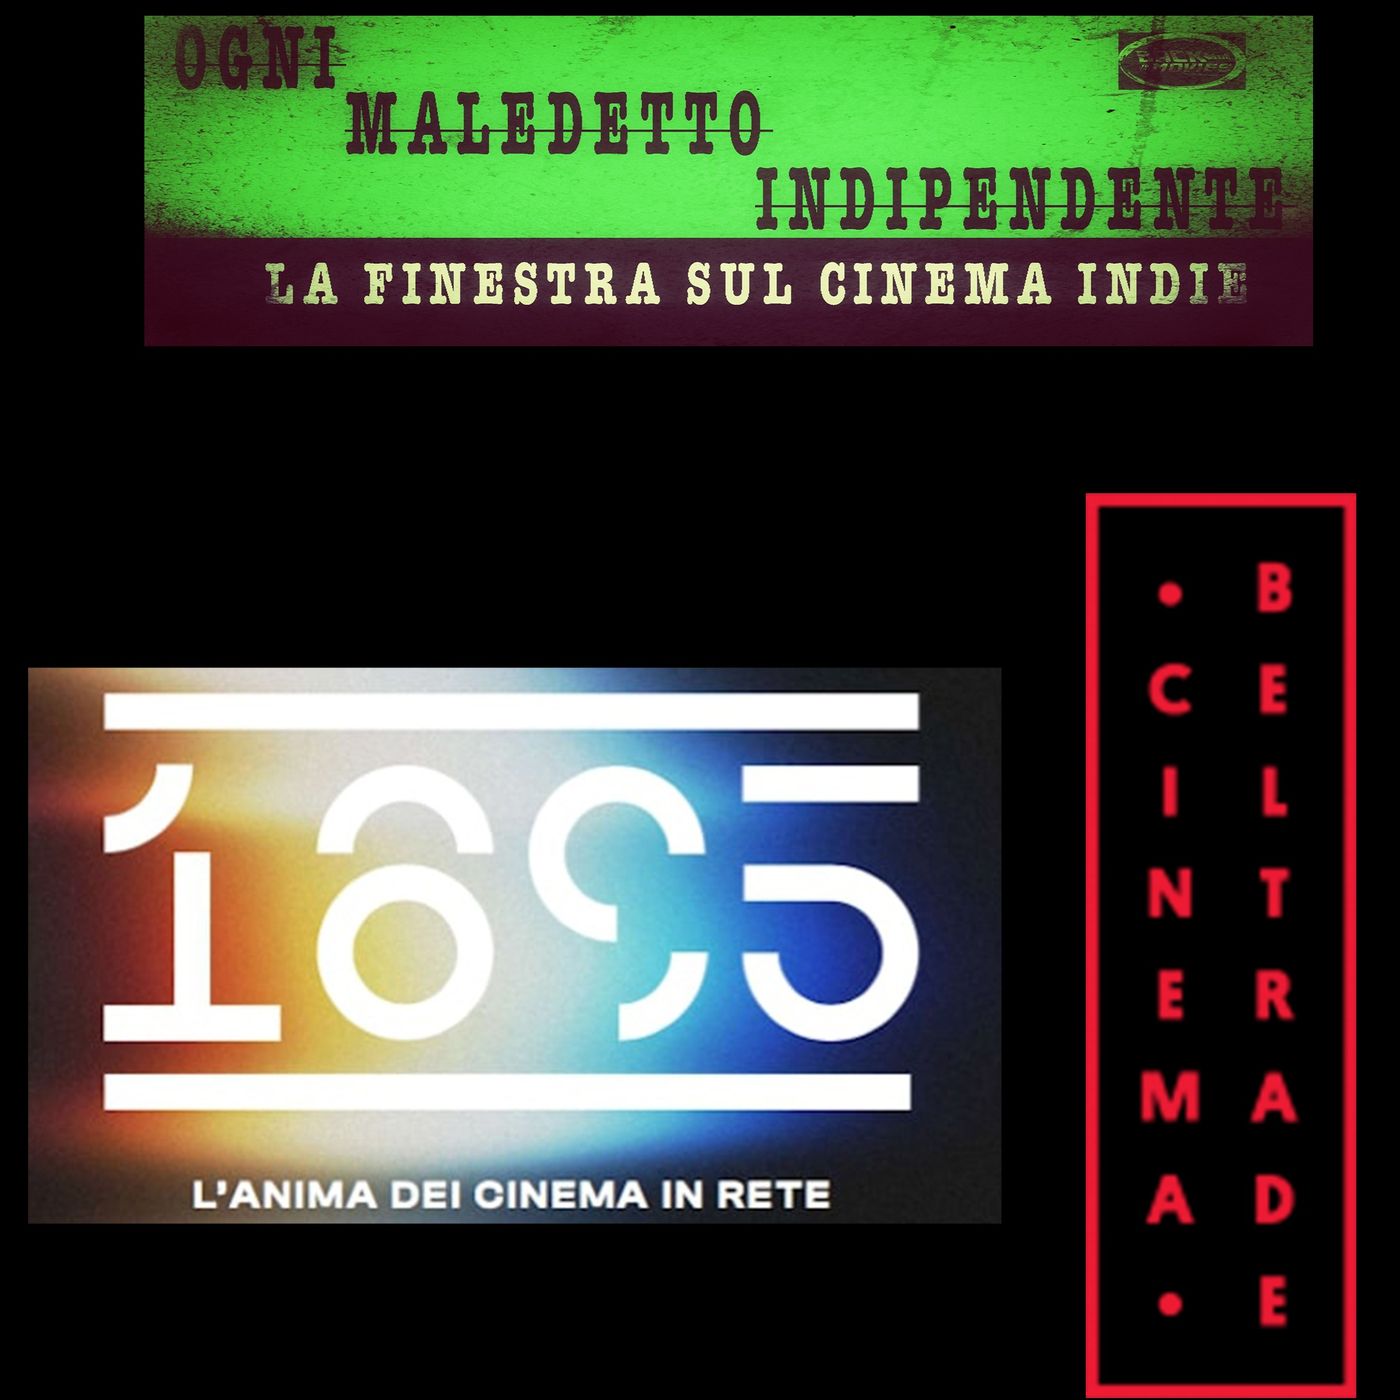 Paola Corti Cinema Beltrade ospite di Ogni Maledetto Indipendente la finestra sul cinema Indie